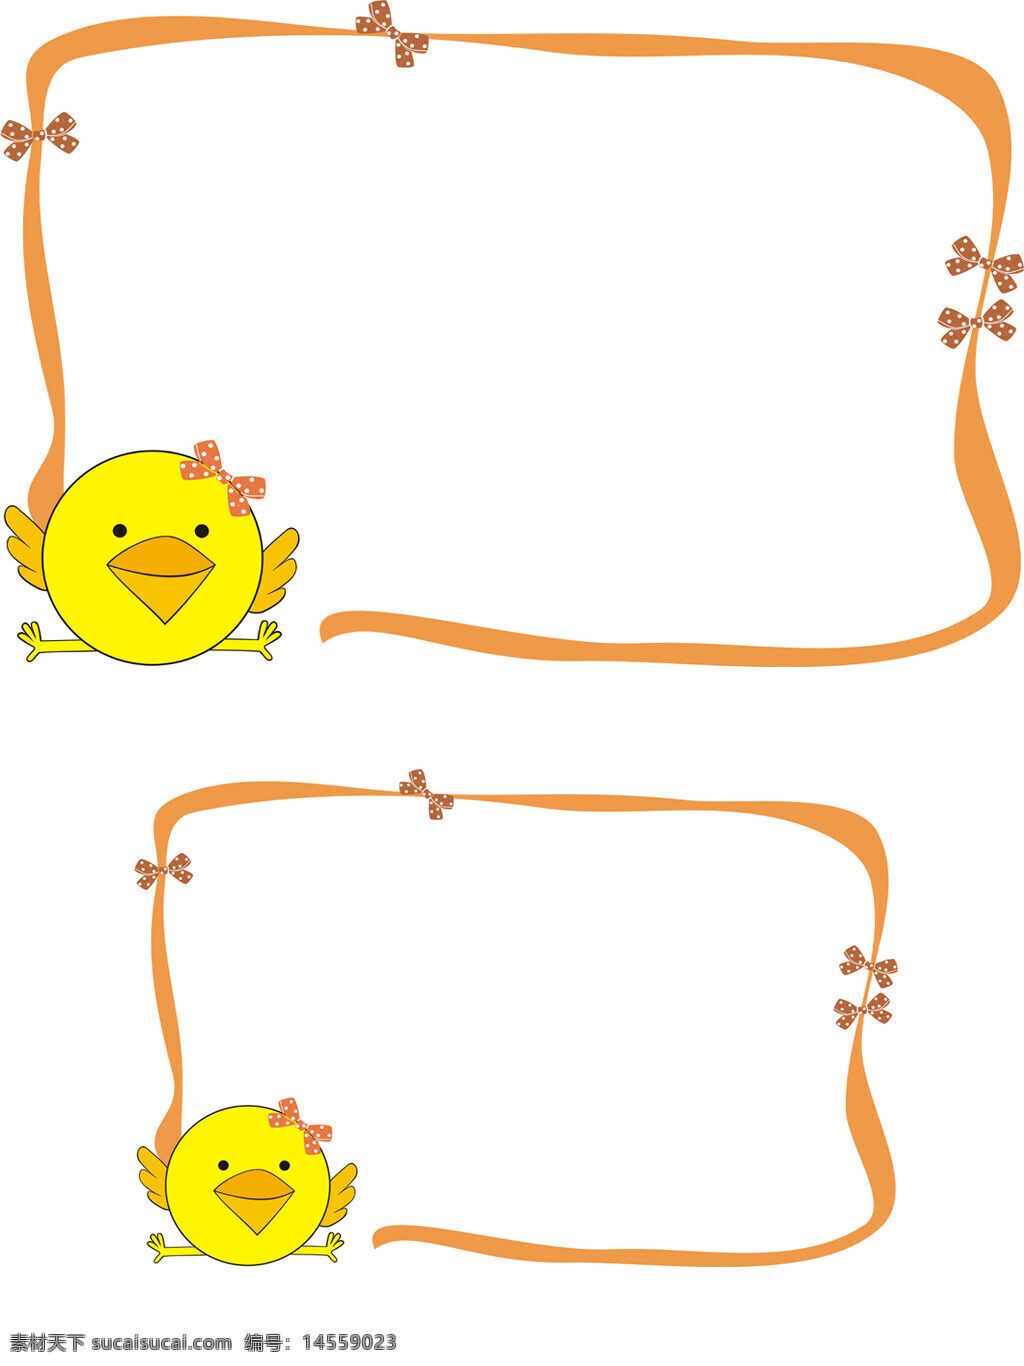 黄色 可爱 卡通 蝴蝶结 小鸡 边框 矢量图 可变色 可变尺寸